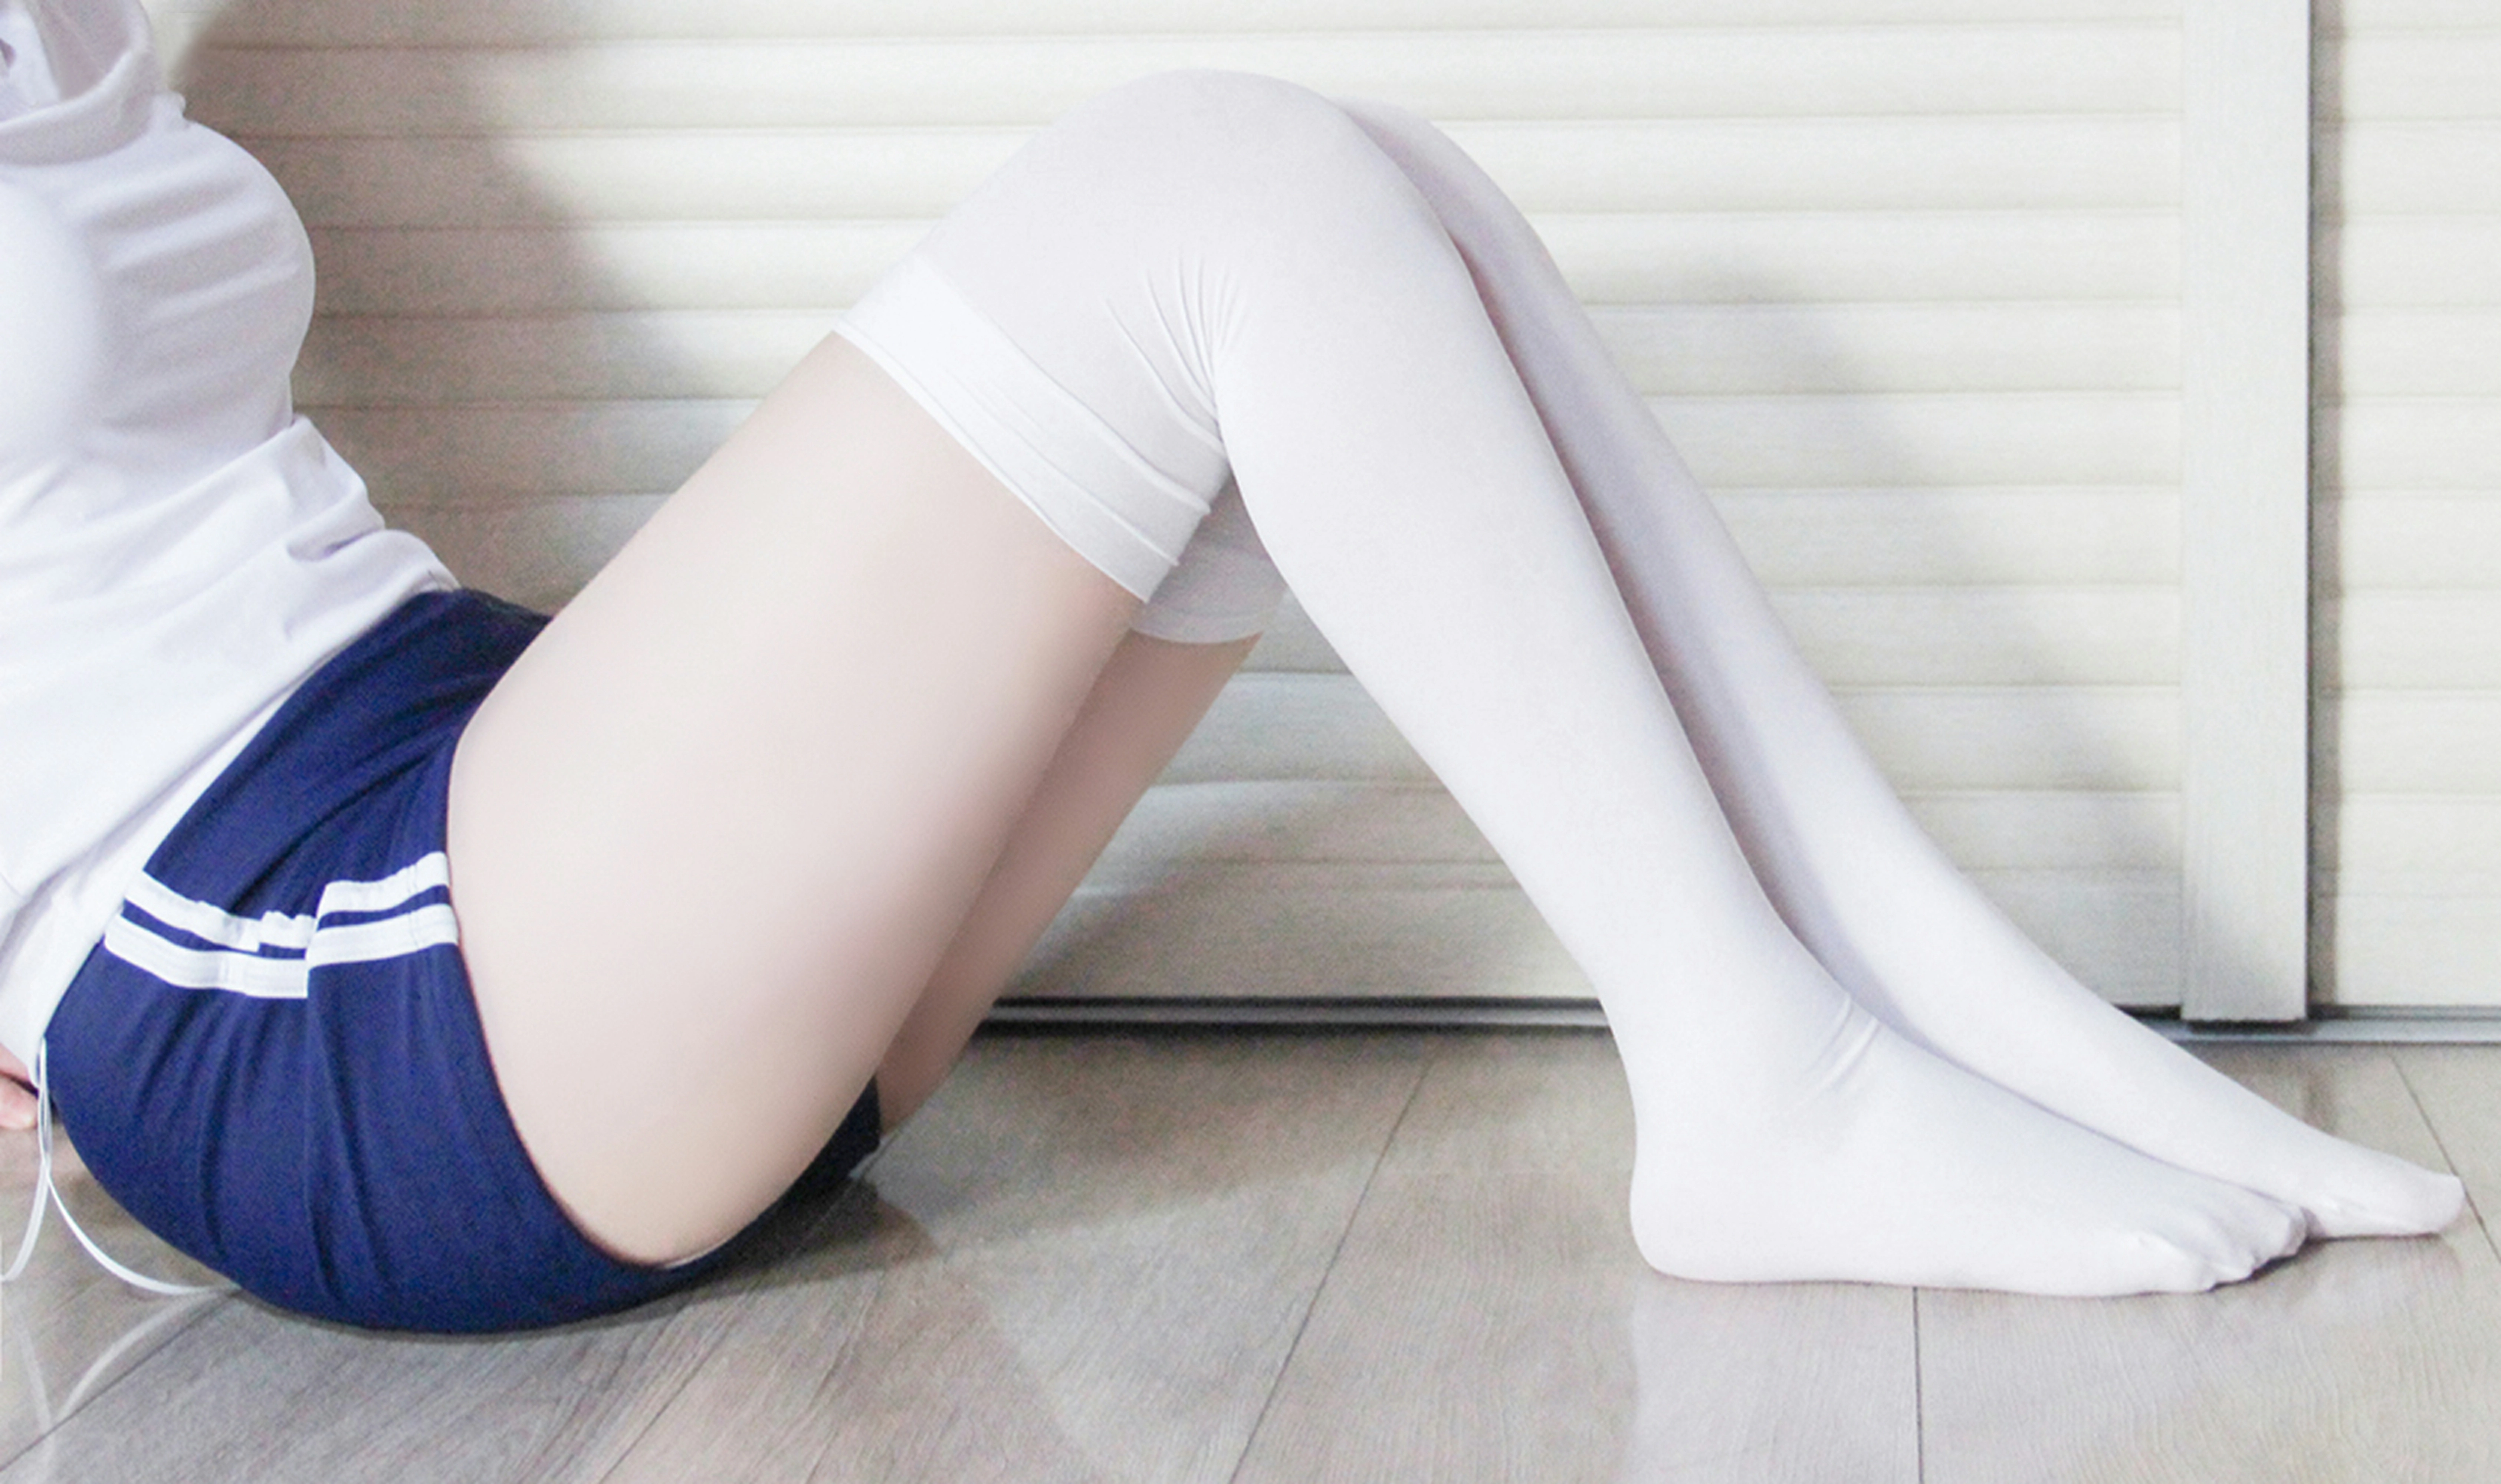 [风之领域]NO.169 清纯小萝莉 蓝色运动短裤加白色丝袜美腿性感私房写真集,